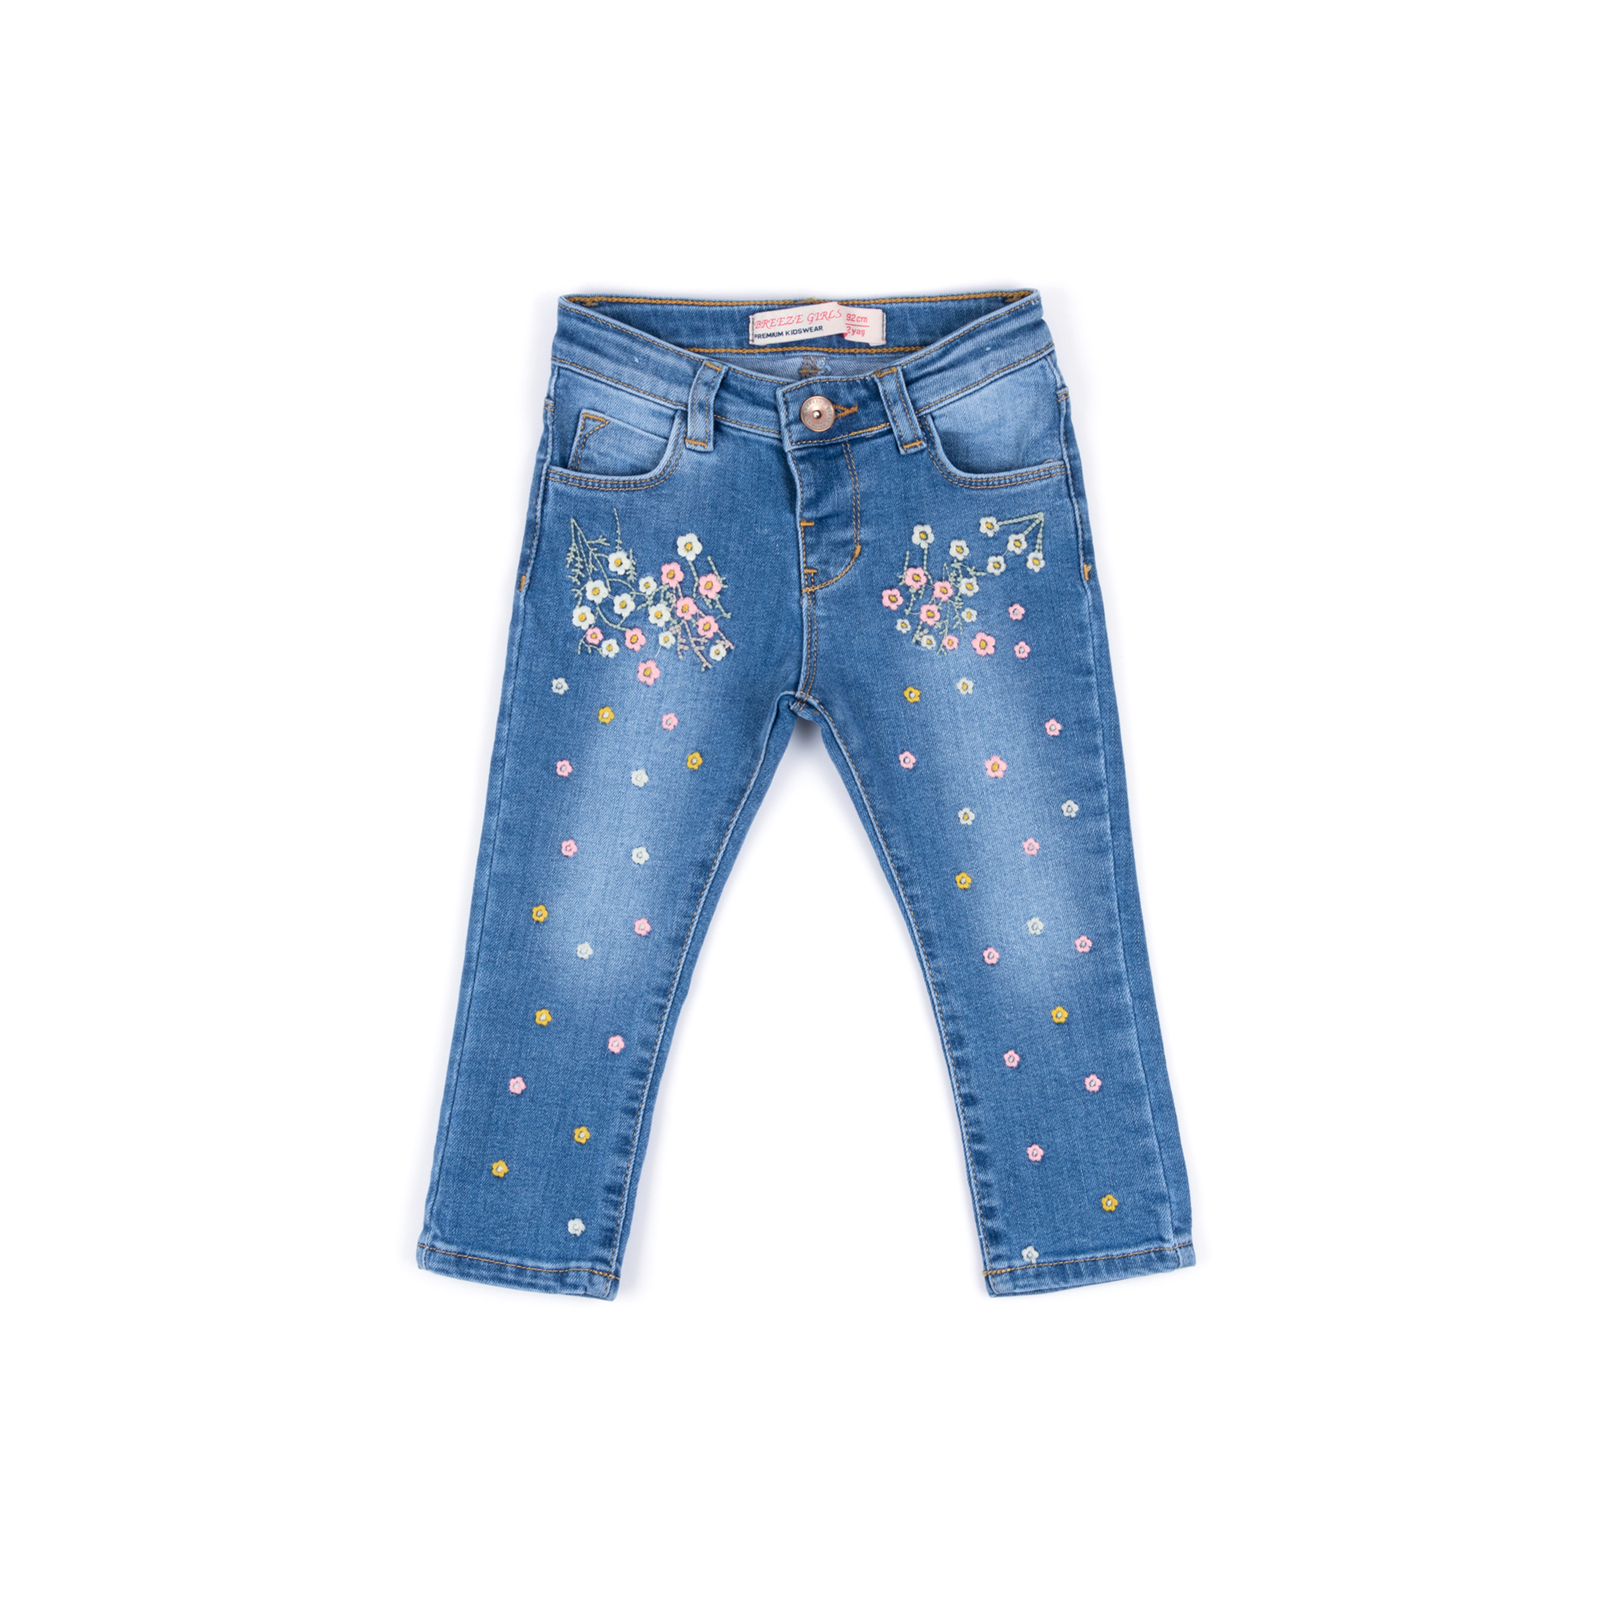 Джинсы Breeze джинсовые с цветочками (OZ-17703-98G-jeans)